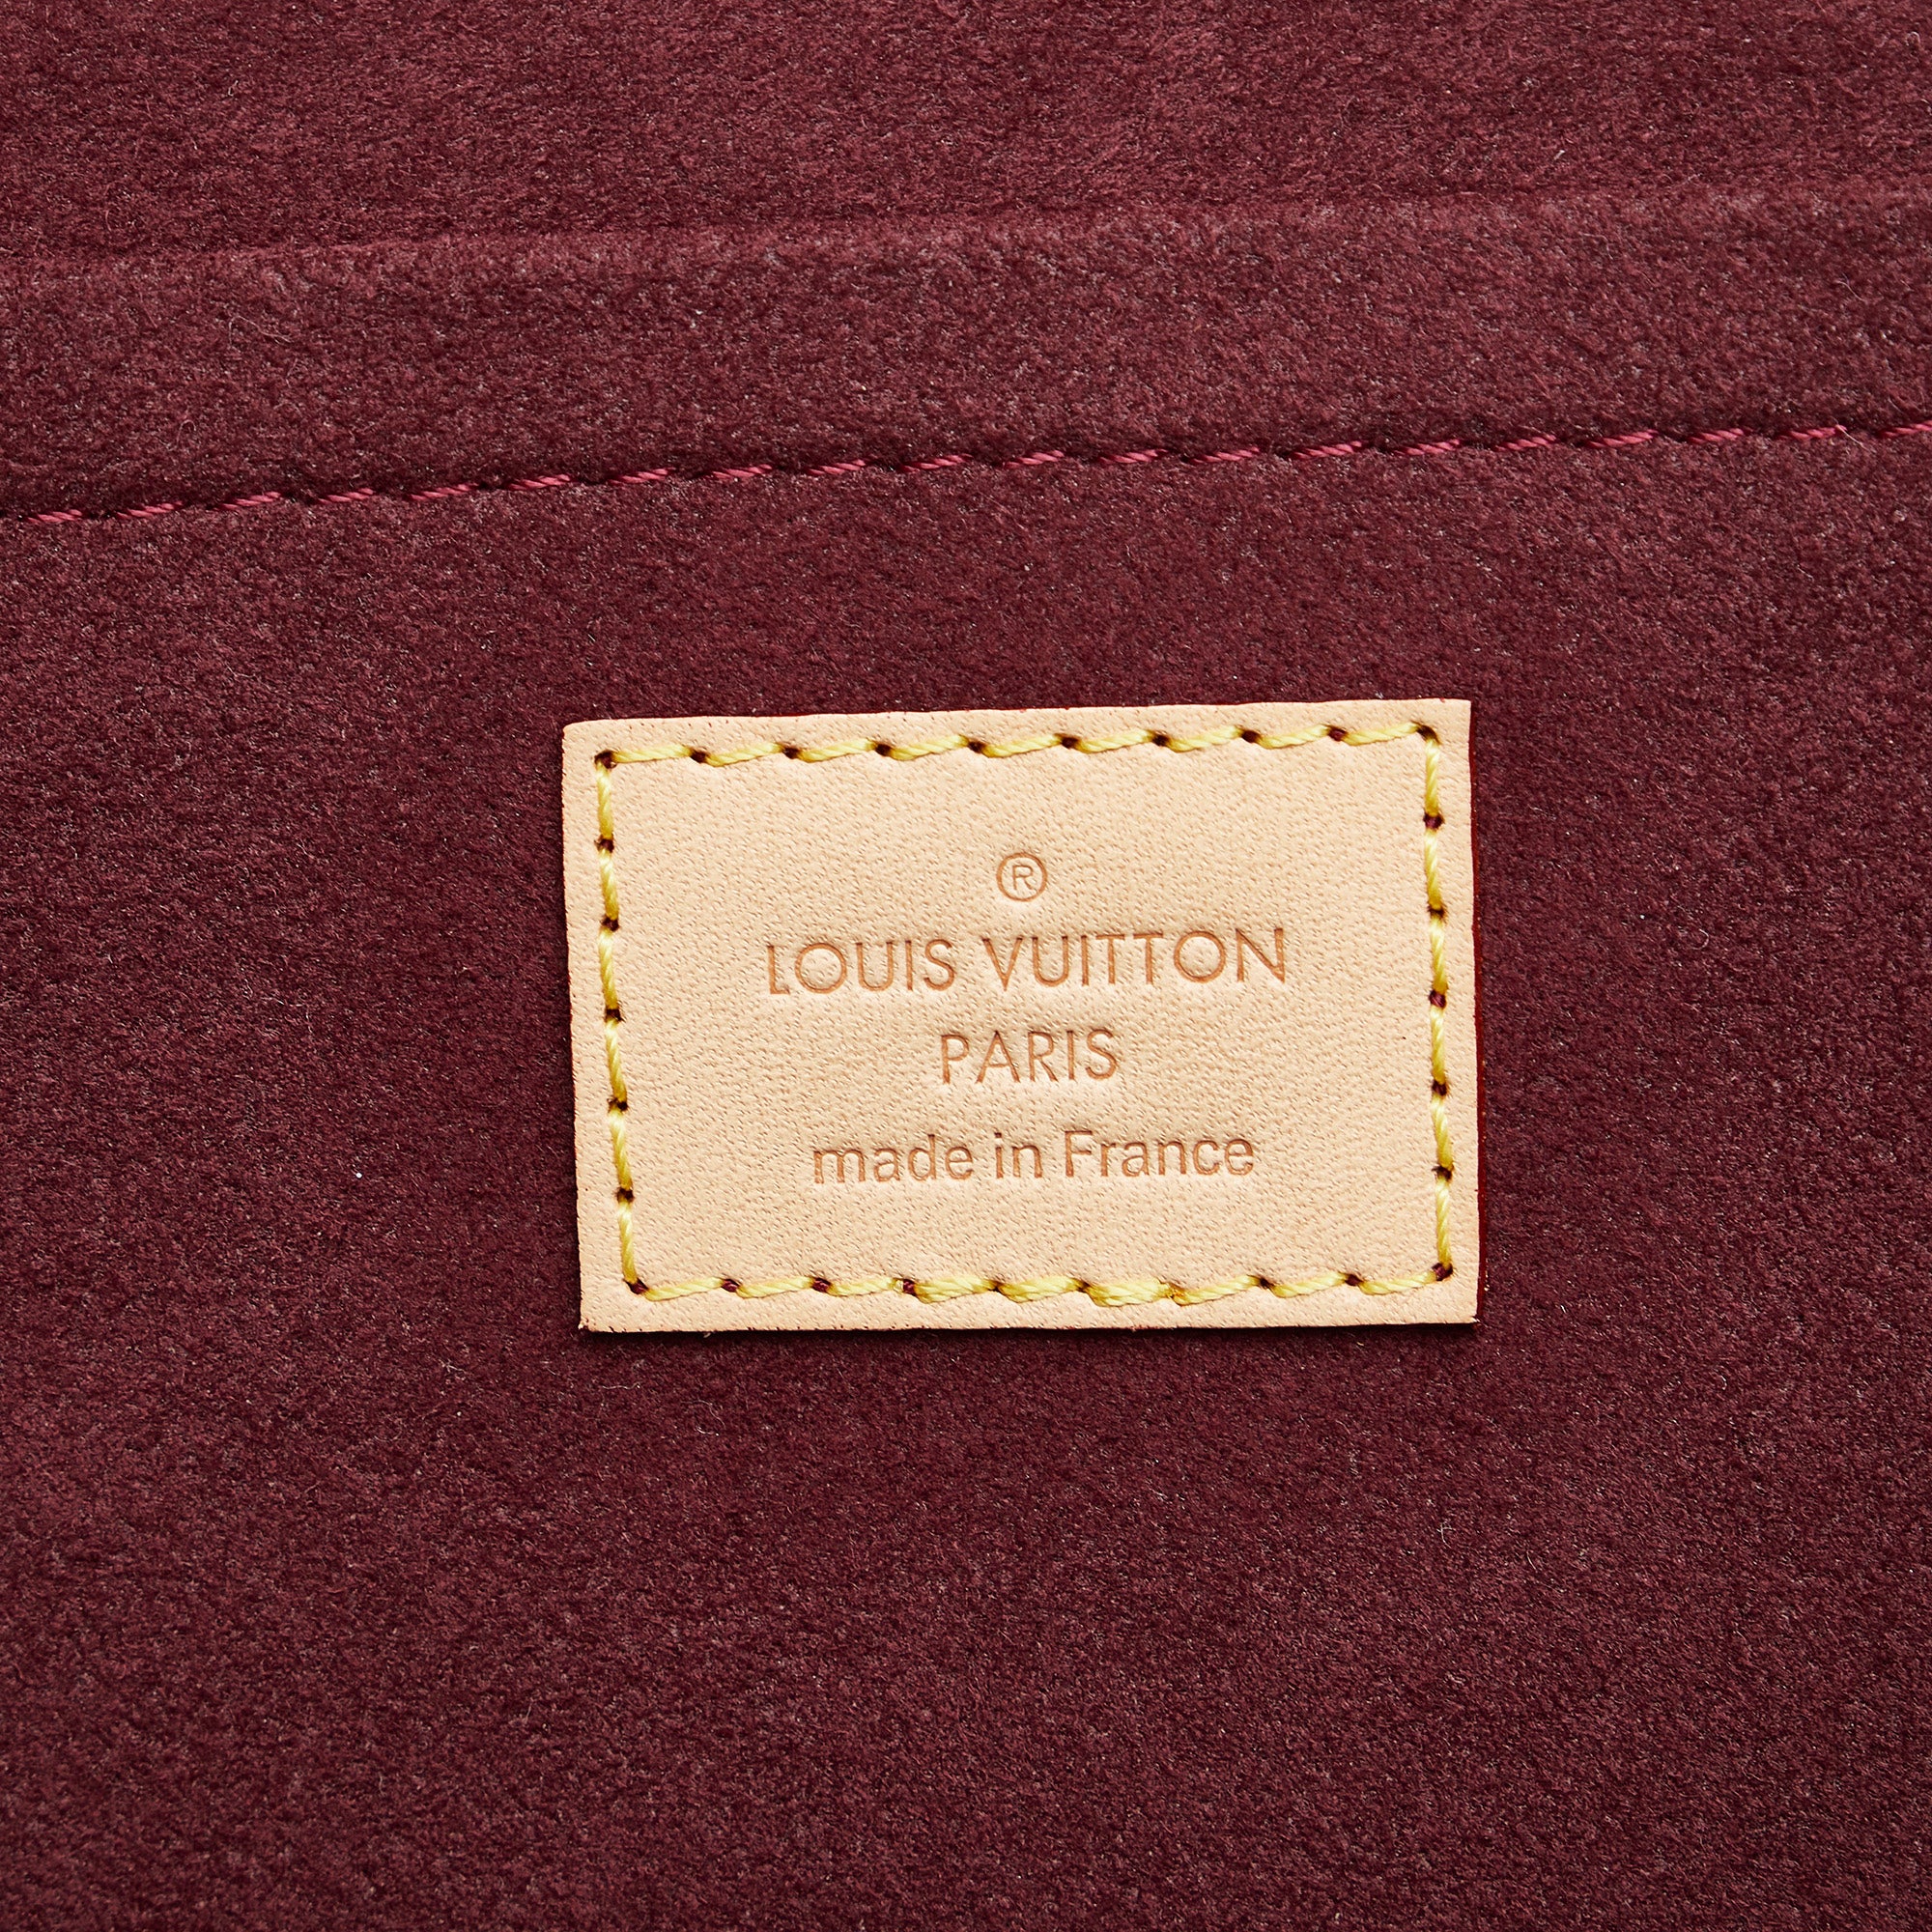 Louis Vuitton Montsouris Backpack - Bijoux Bag Spa & Consignment